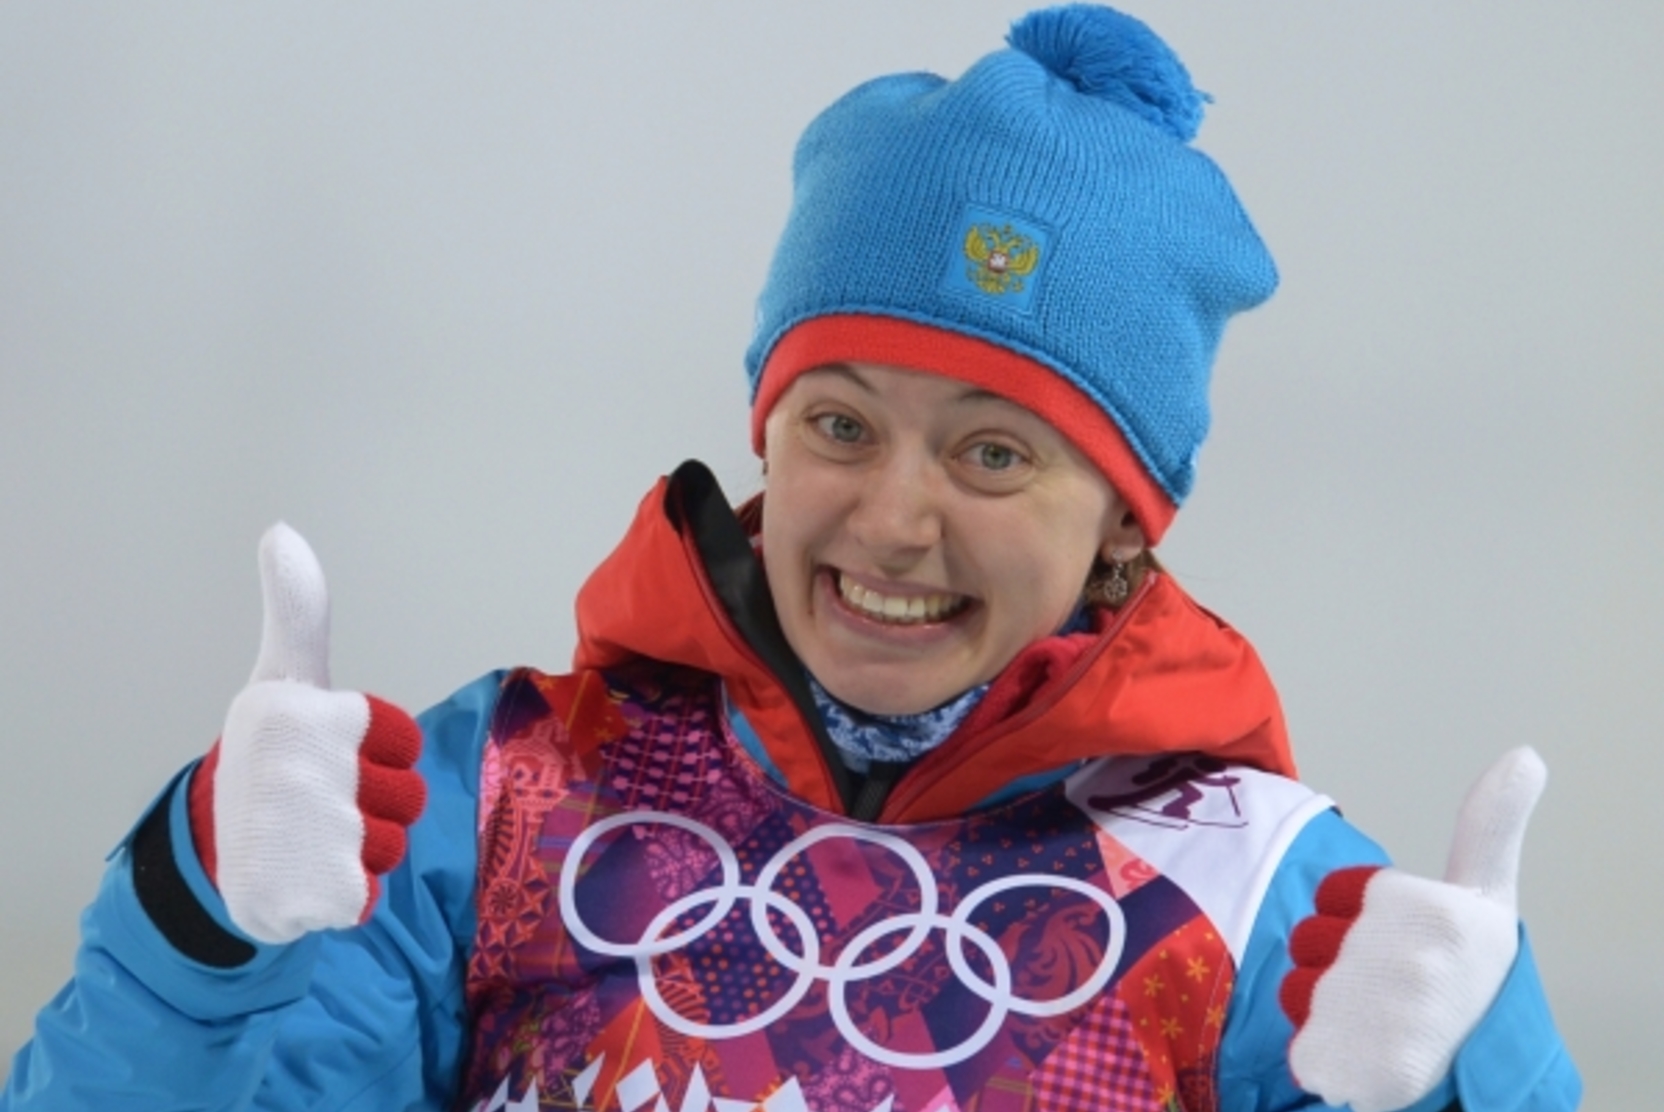 Суд постановил вернуть России серебряную медаль Олимпиады-2014